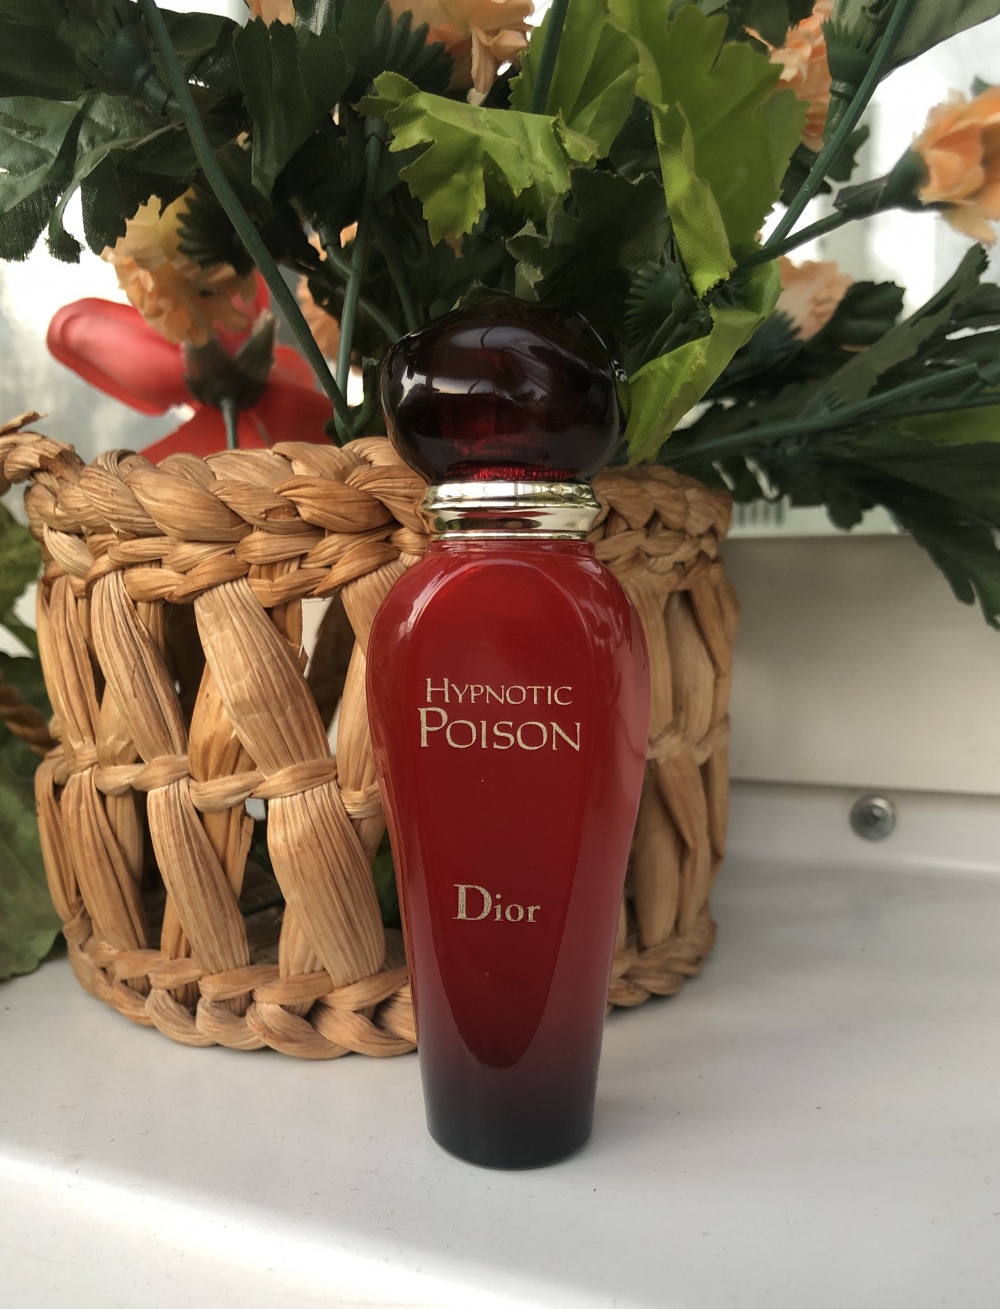 Dior poison hypnotic EDT 20ml